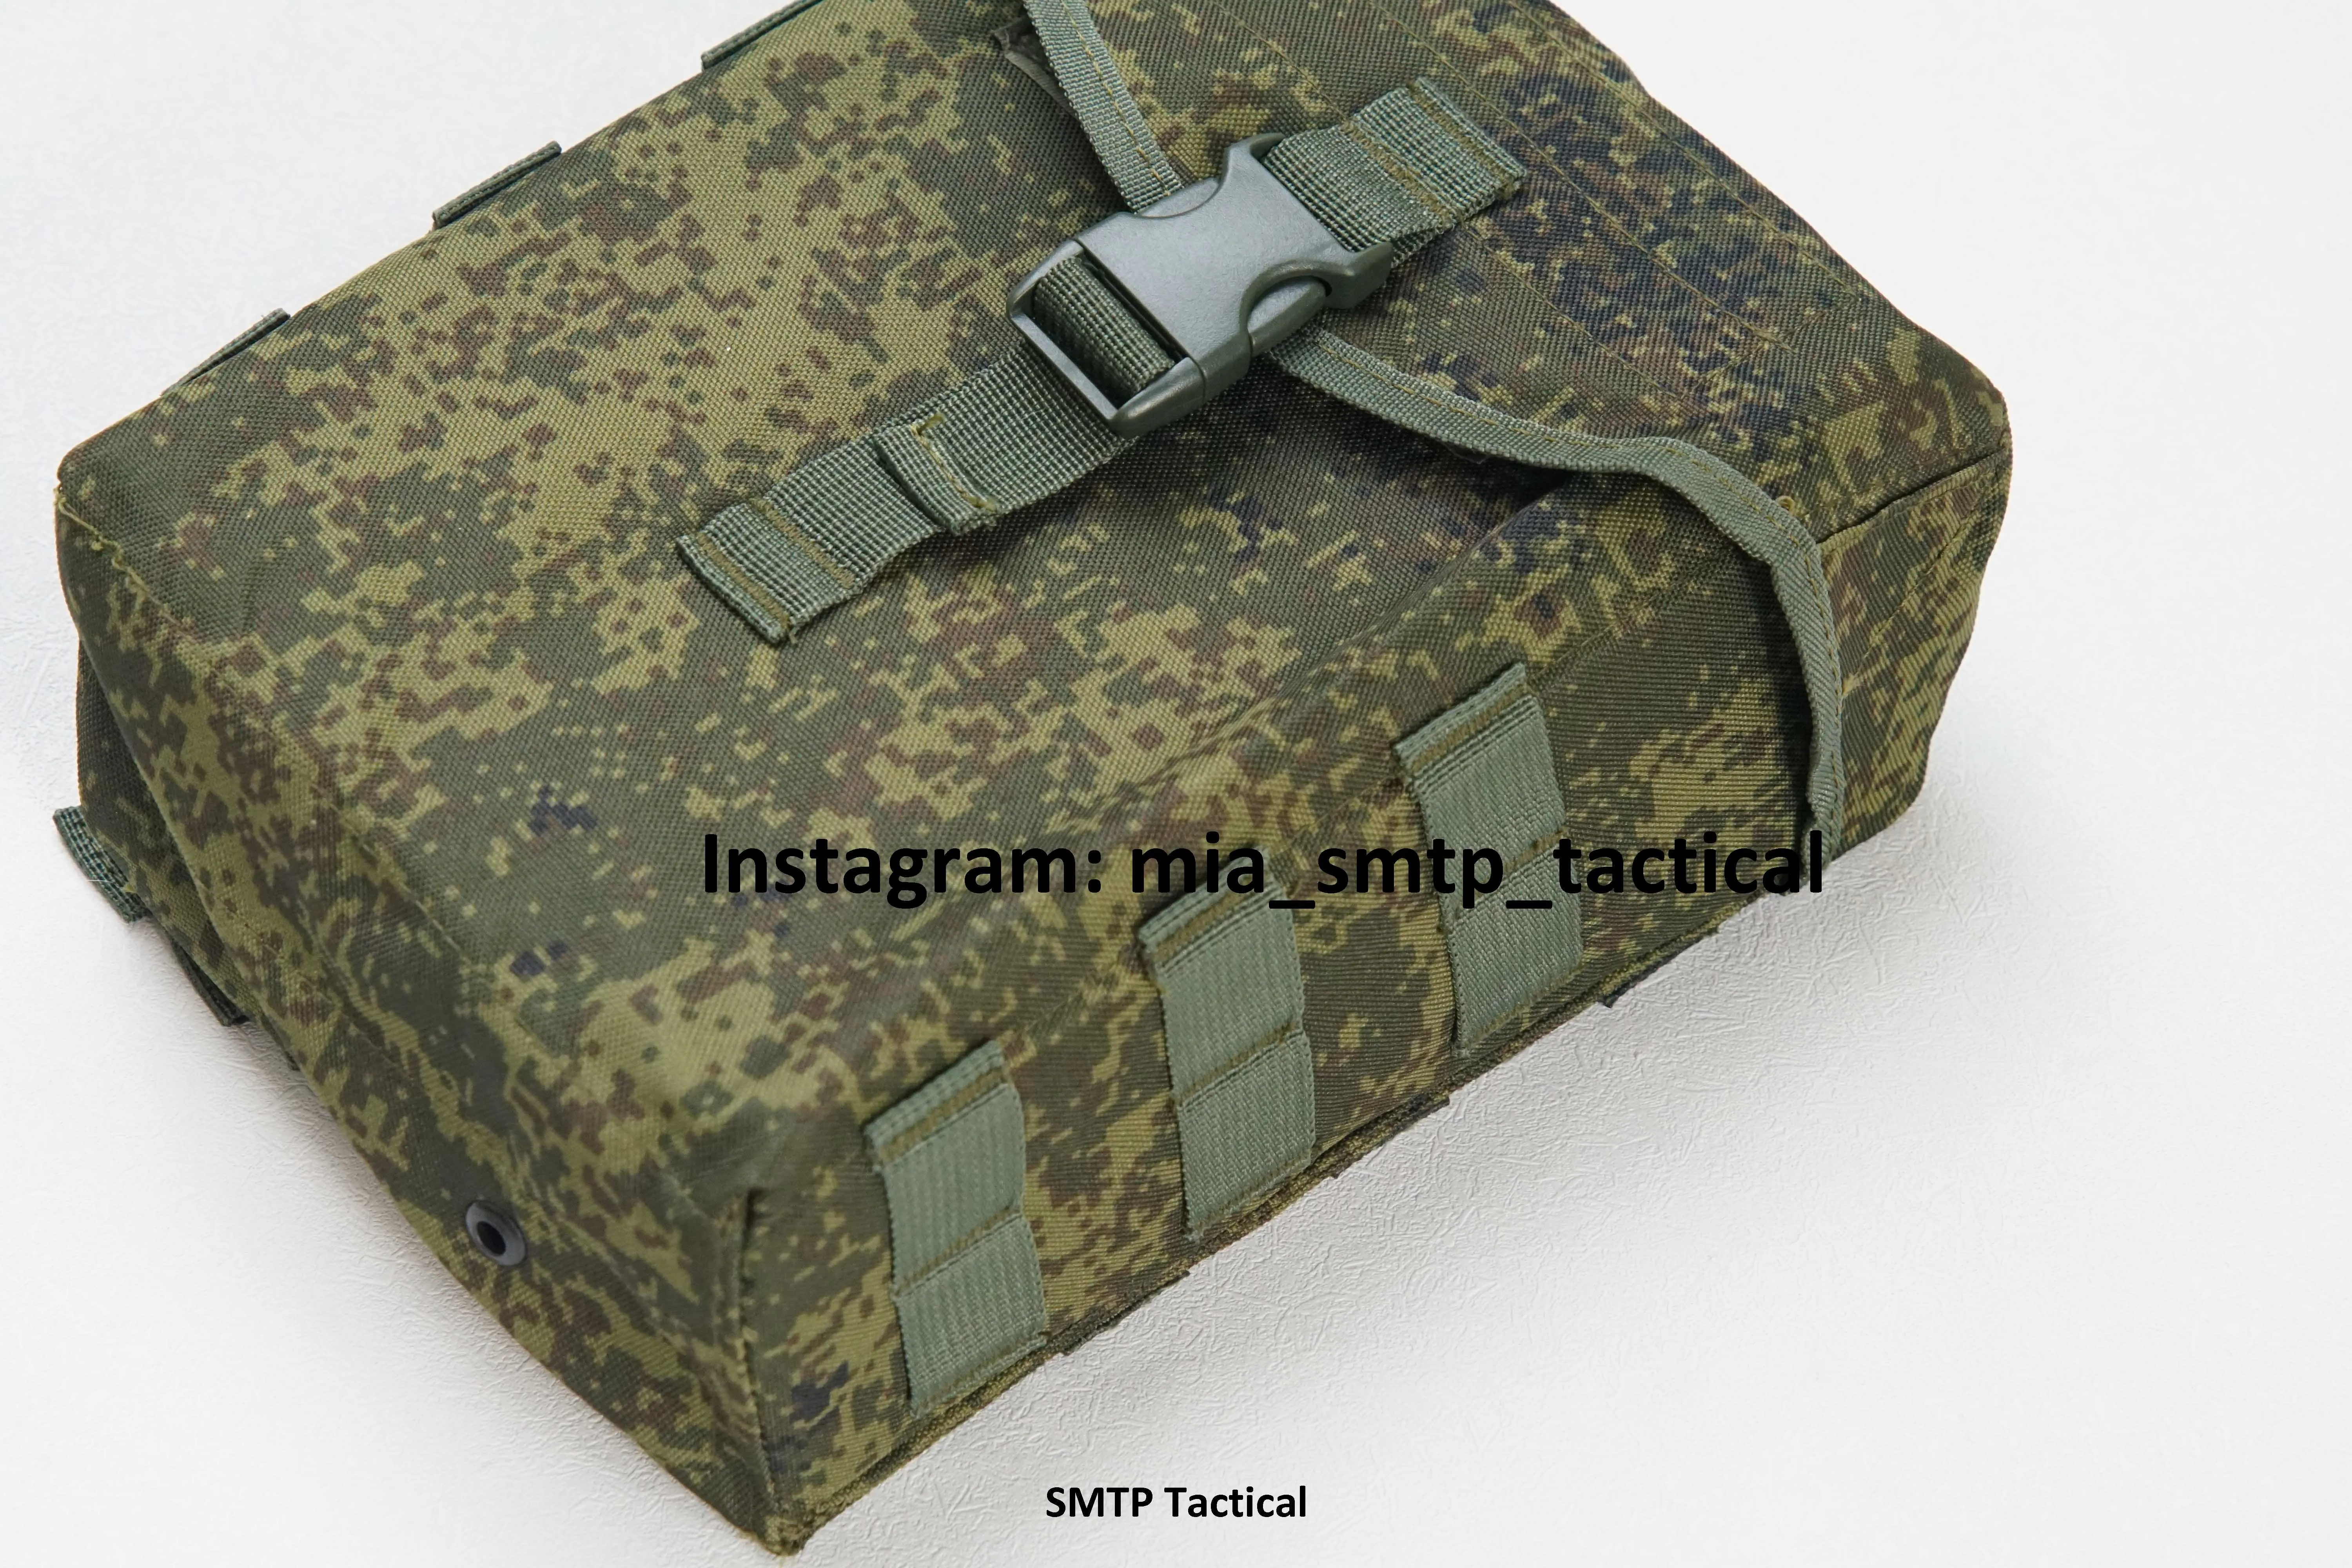 Сумка Для Российского журнала SMTP 6sh117 PKM, сумка для российского магазина emr PKM, камуфляжная сумка для emr